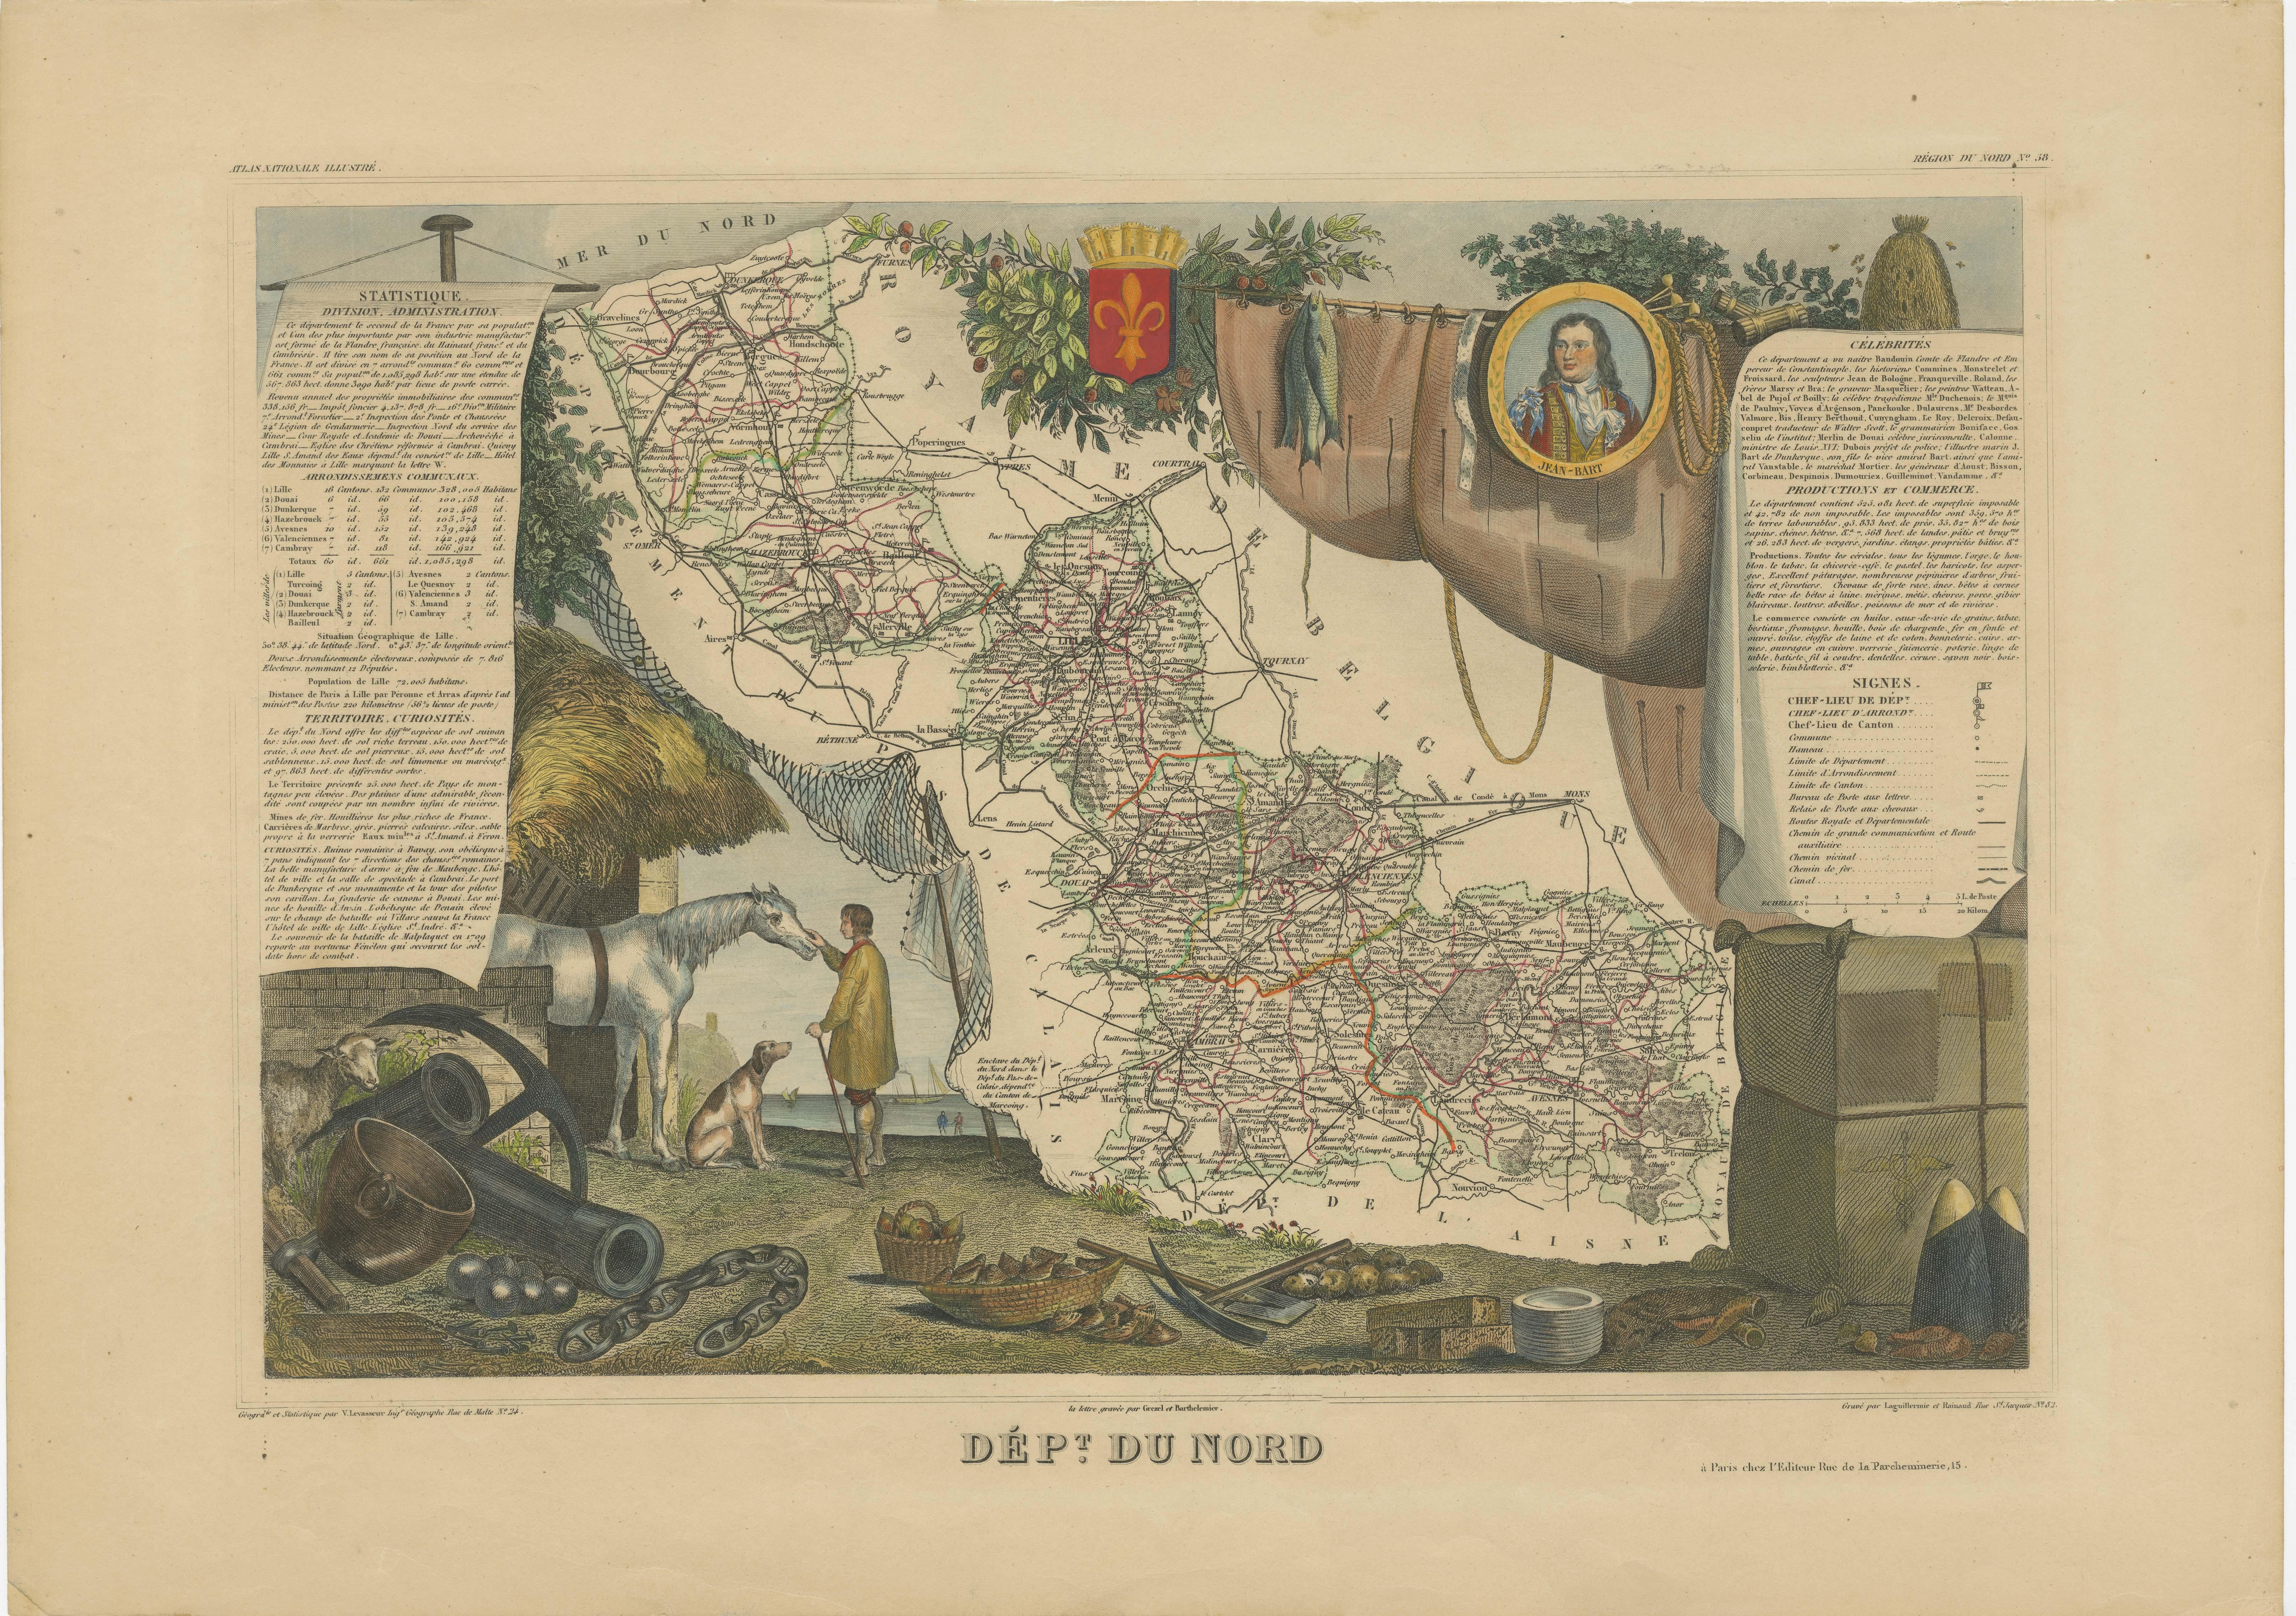 Antike Karte mit dem Titel 'Dept. du Nord'. Karte des französischen Departements Nord, Frankreich. Dieses Gebiet ist bekannt für die Herstellung von Maroilles, einem Kuhmilchkäse. Dieser Käse wird in rechteckigen Blöcken mit einer feuchten,